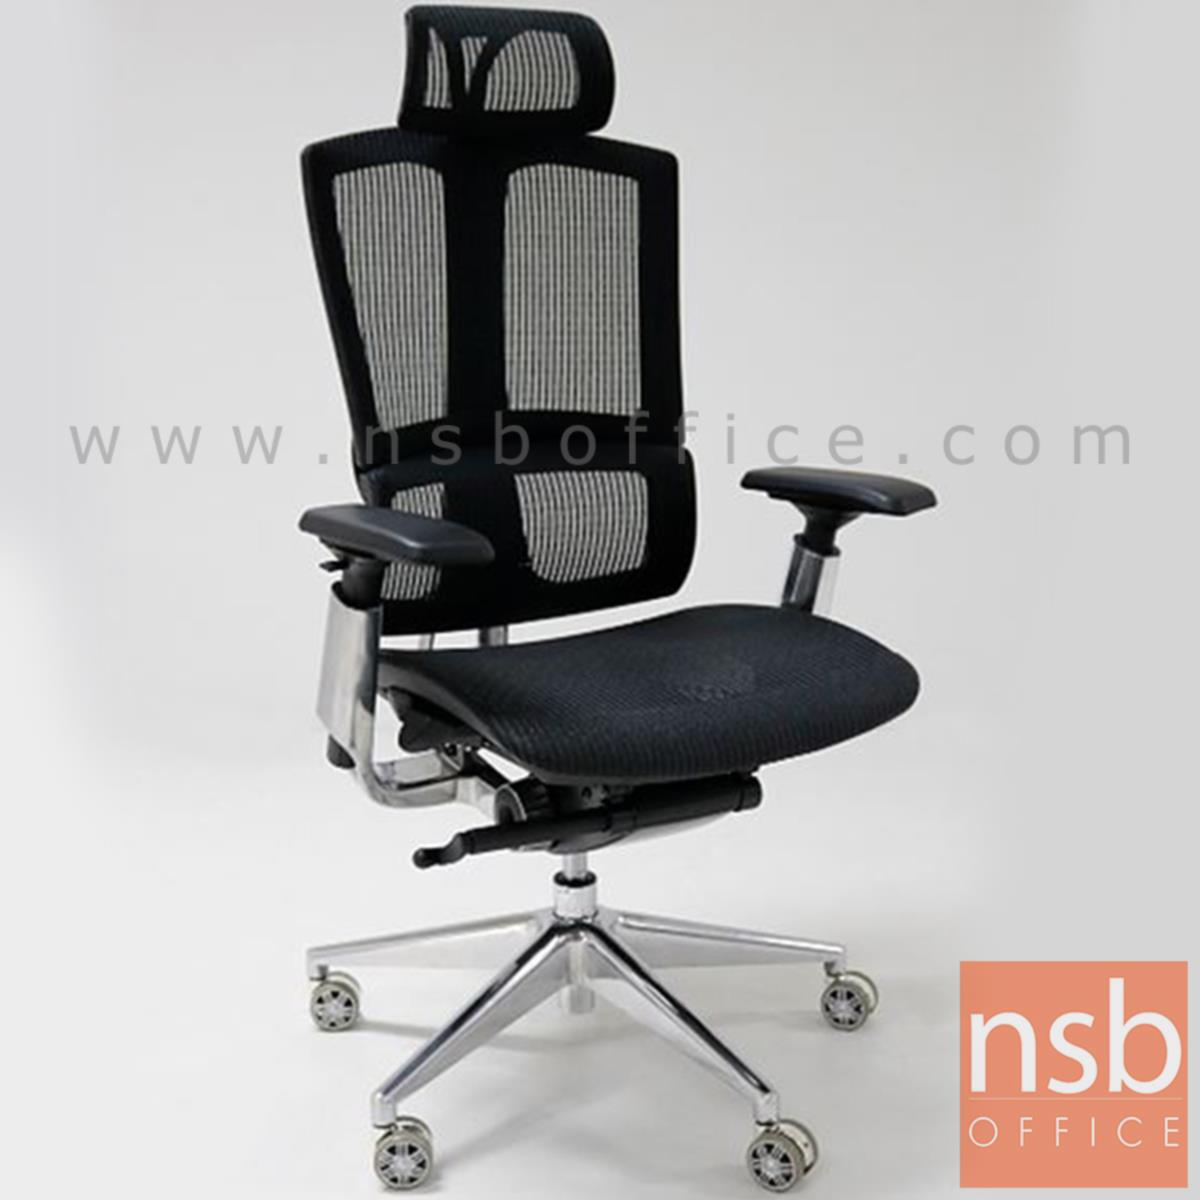 B24A060:เก้าอี้ผู้บริหารหลังเน็ต รุ่น Primrose (พริมโรส)  ขาอลูมินั่ม